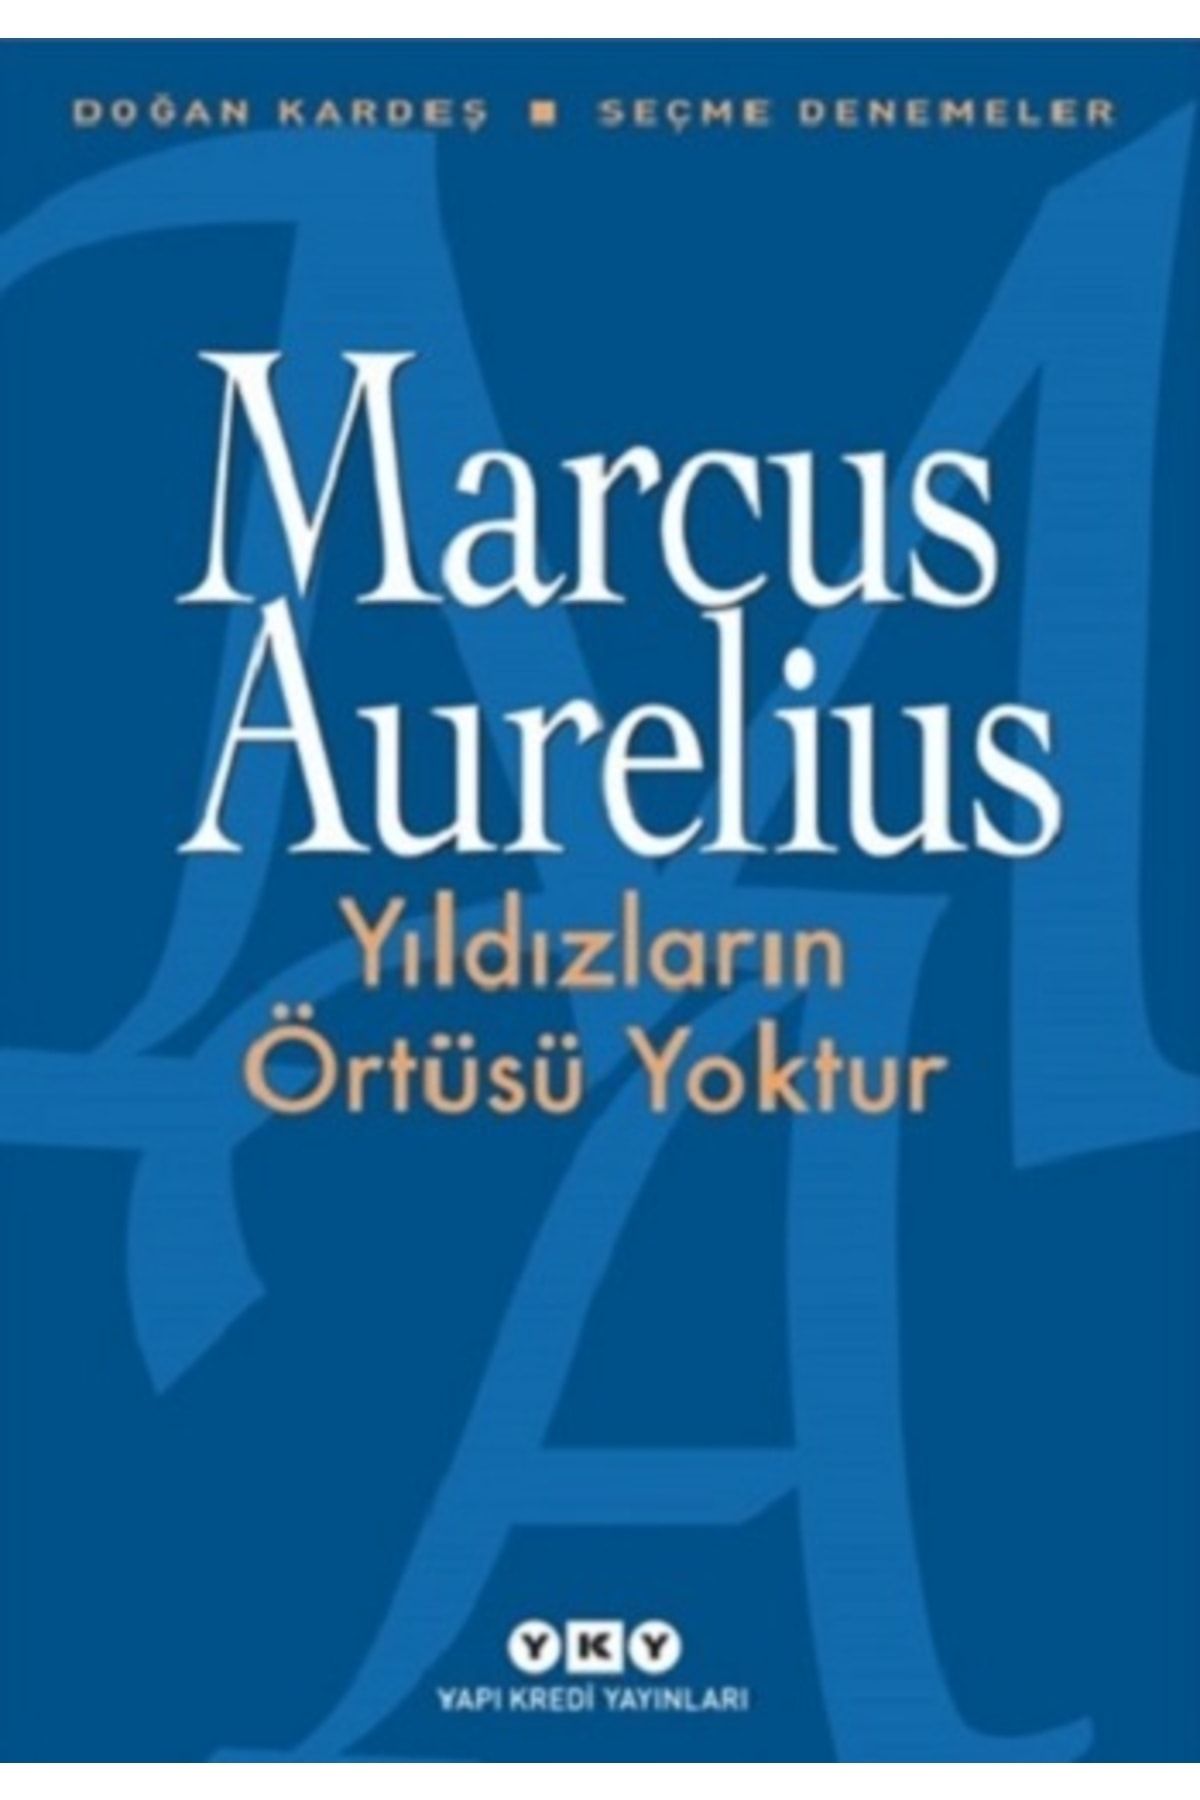 Yapı Kredi Yayınları Yıldızların Örtüsü Yoktur, Marcus Aurelius, Yapı Kredi Yayınları, Yıldızların Örtüsü Yoktur Kitabı,